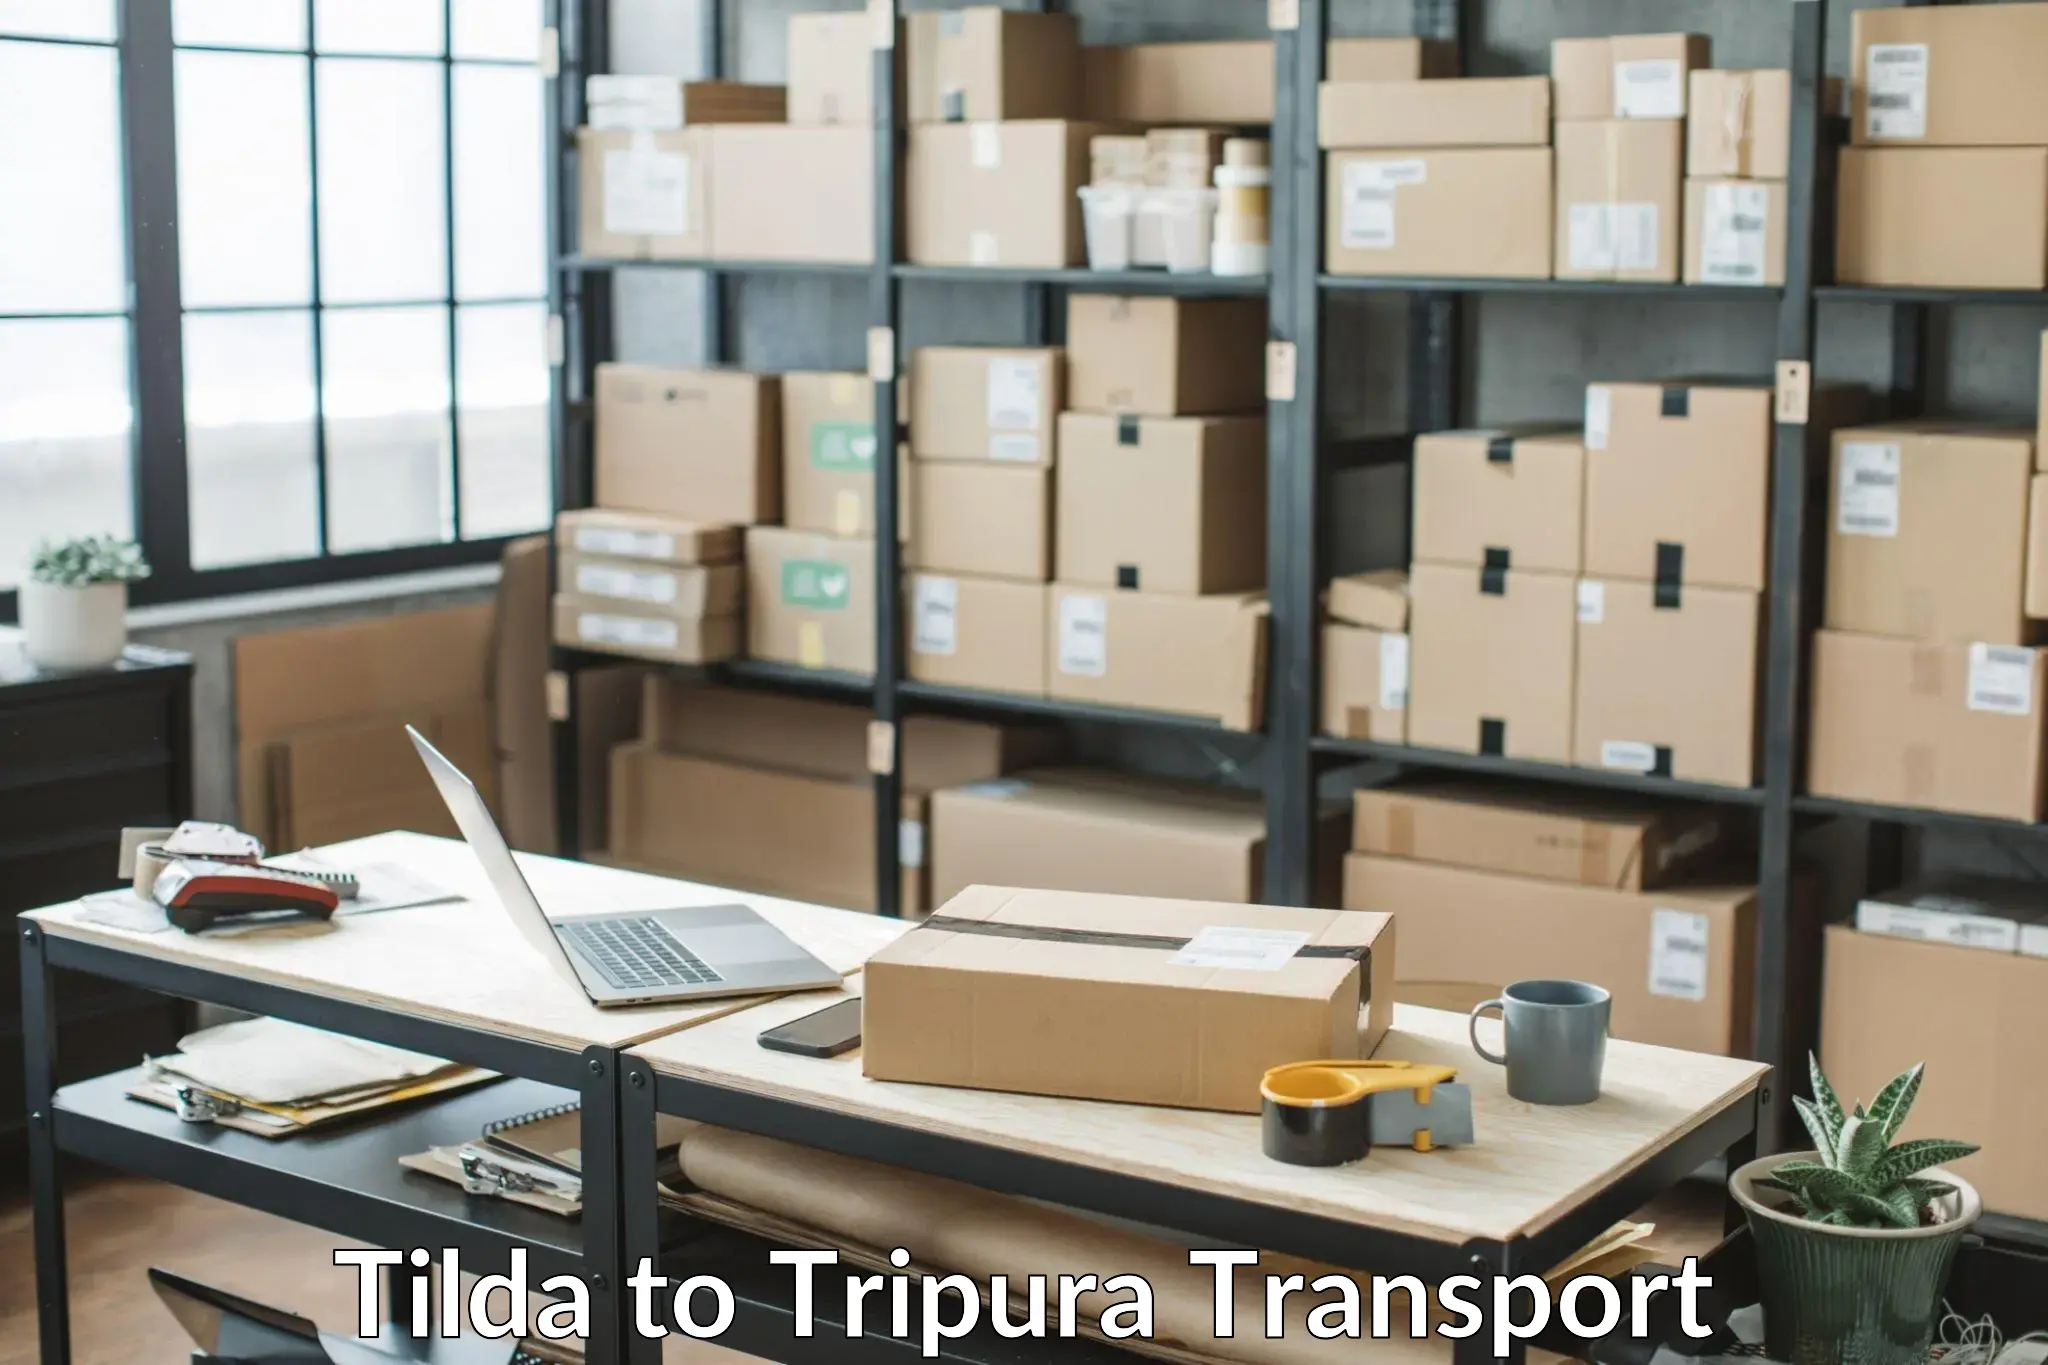 Online transport service Tilda to Manu Bazar